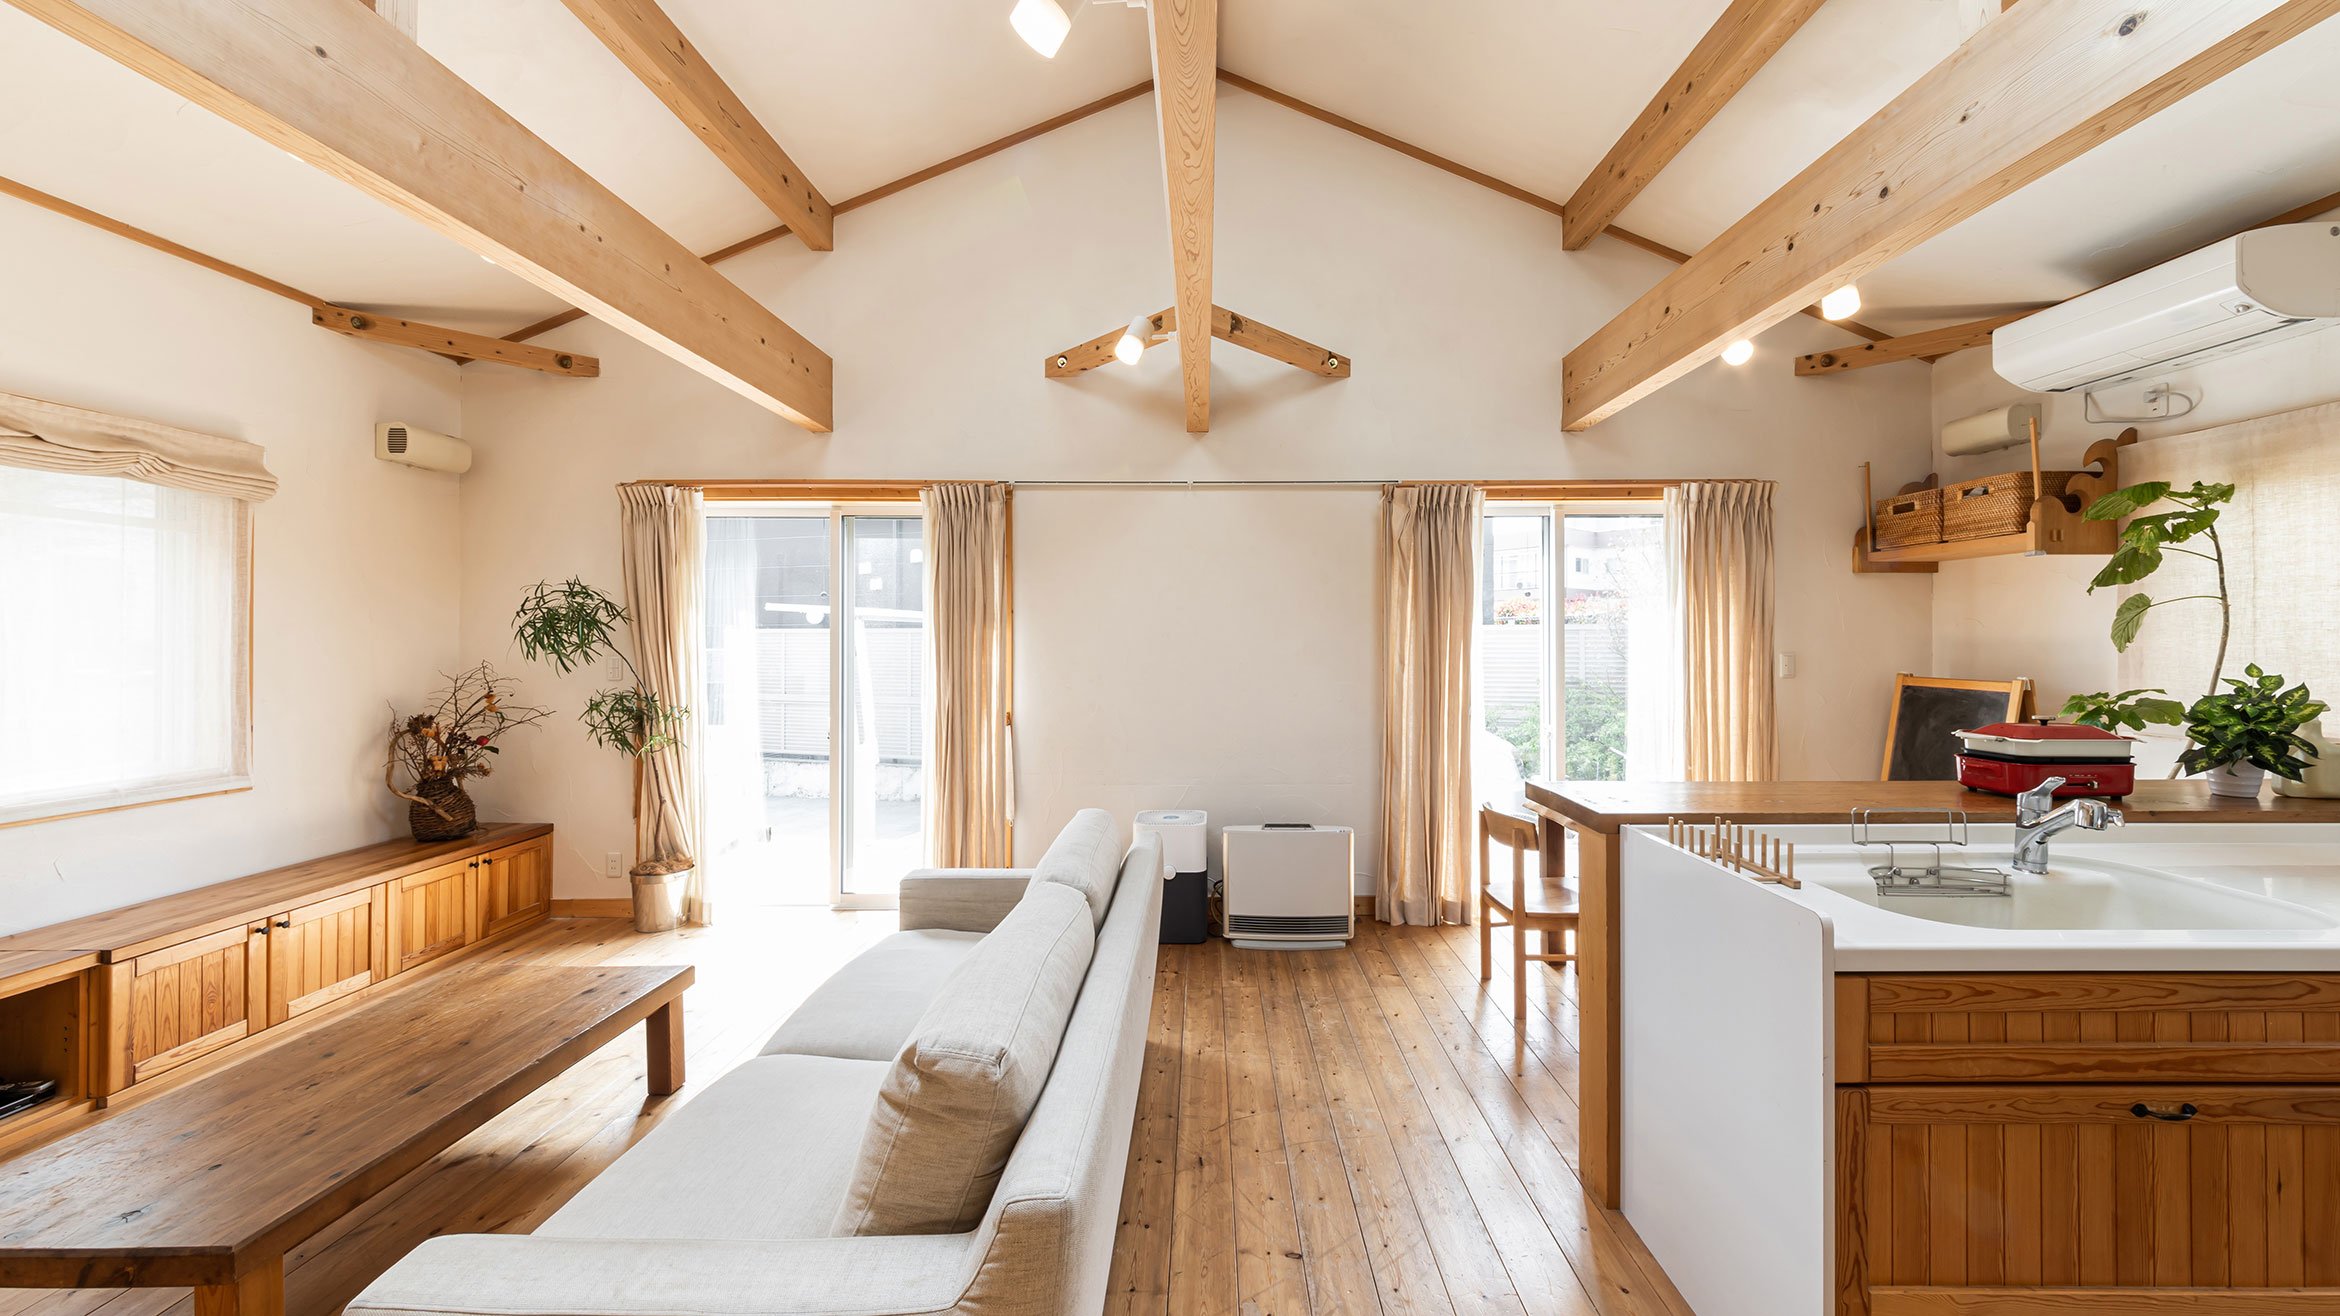 Japanese modern wooden living room